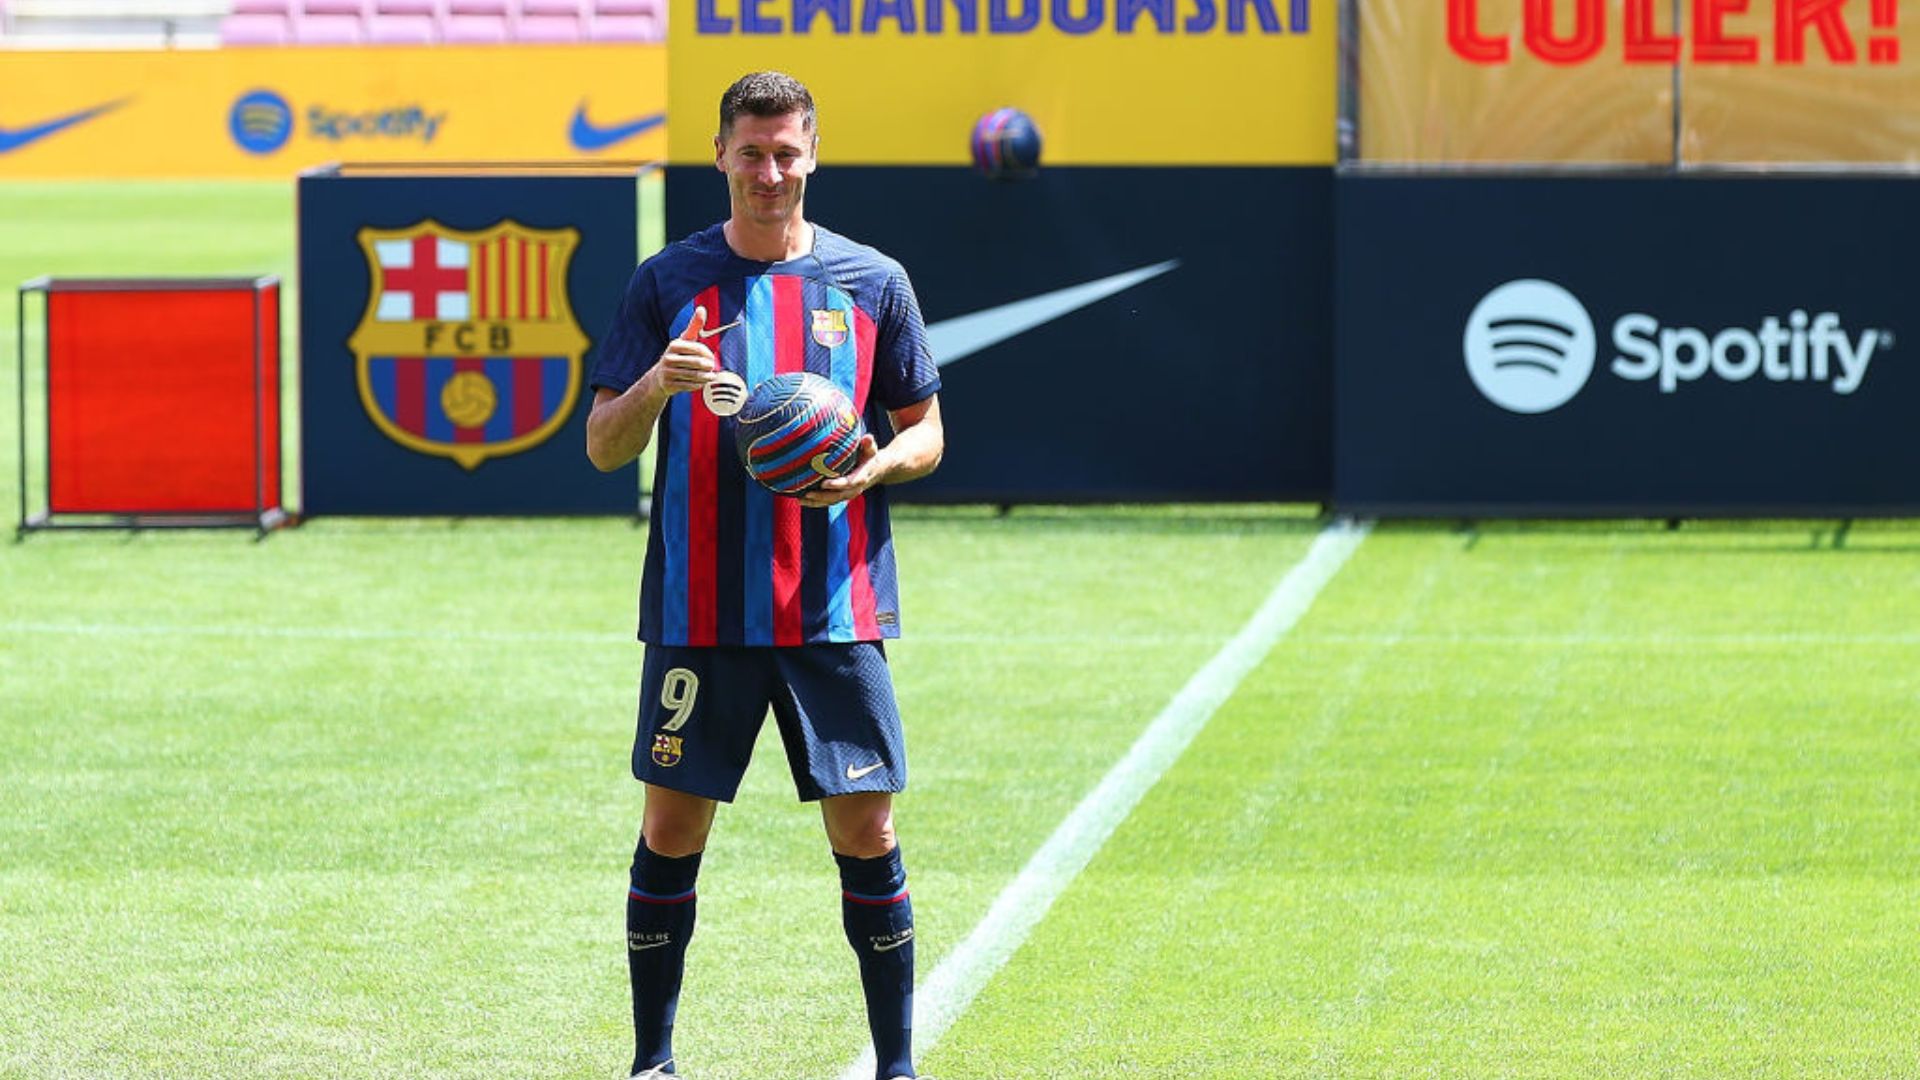 Barcelona promove apresentação de Lewandowski no Camp Nou